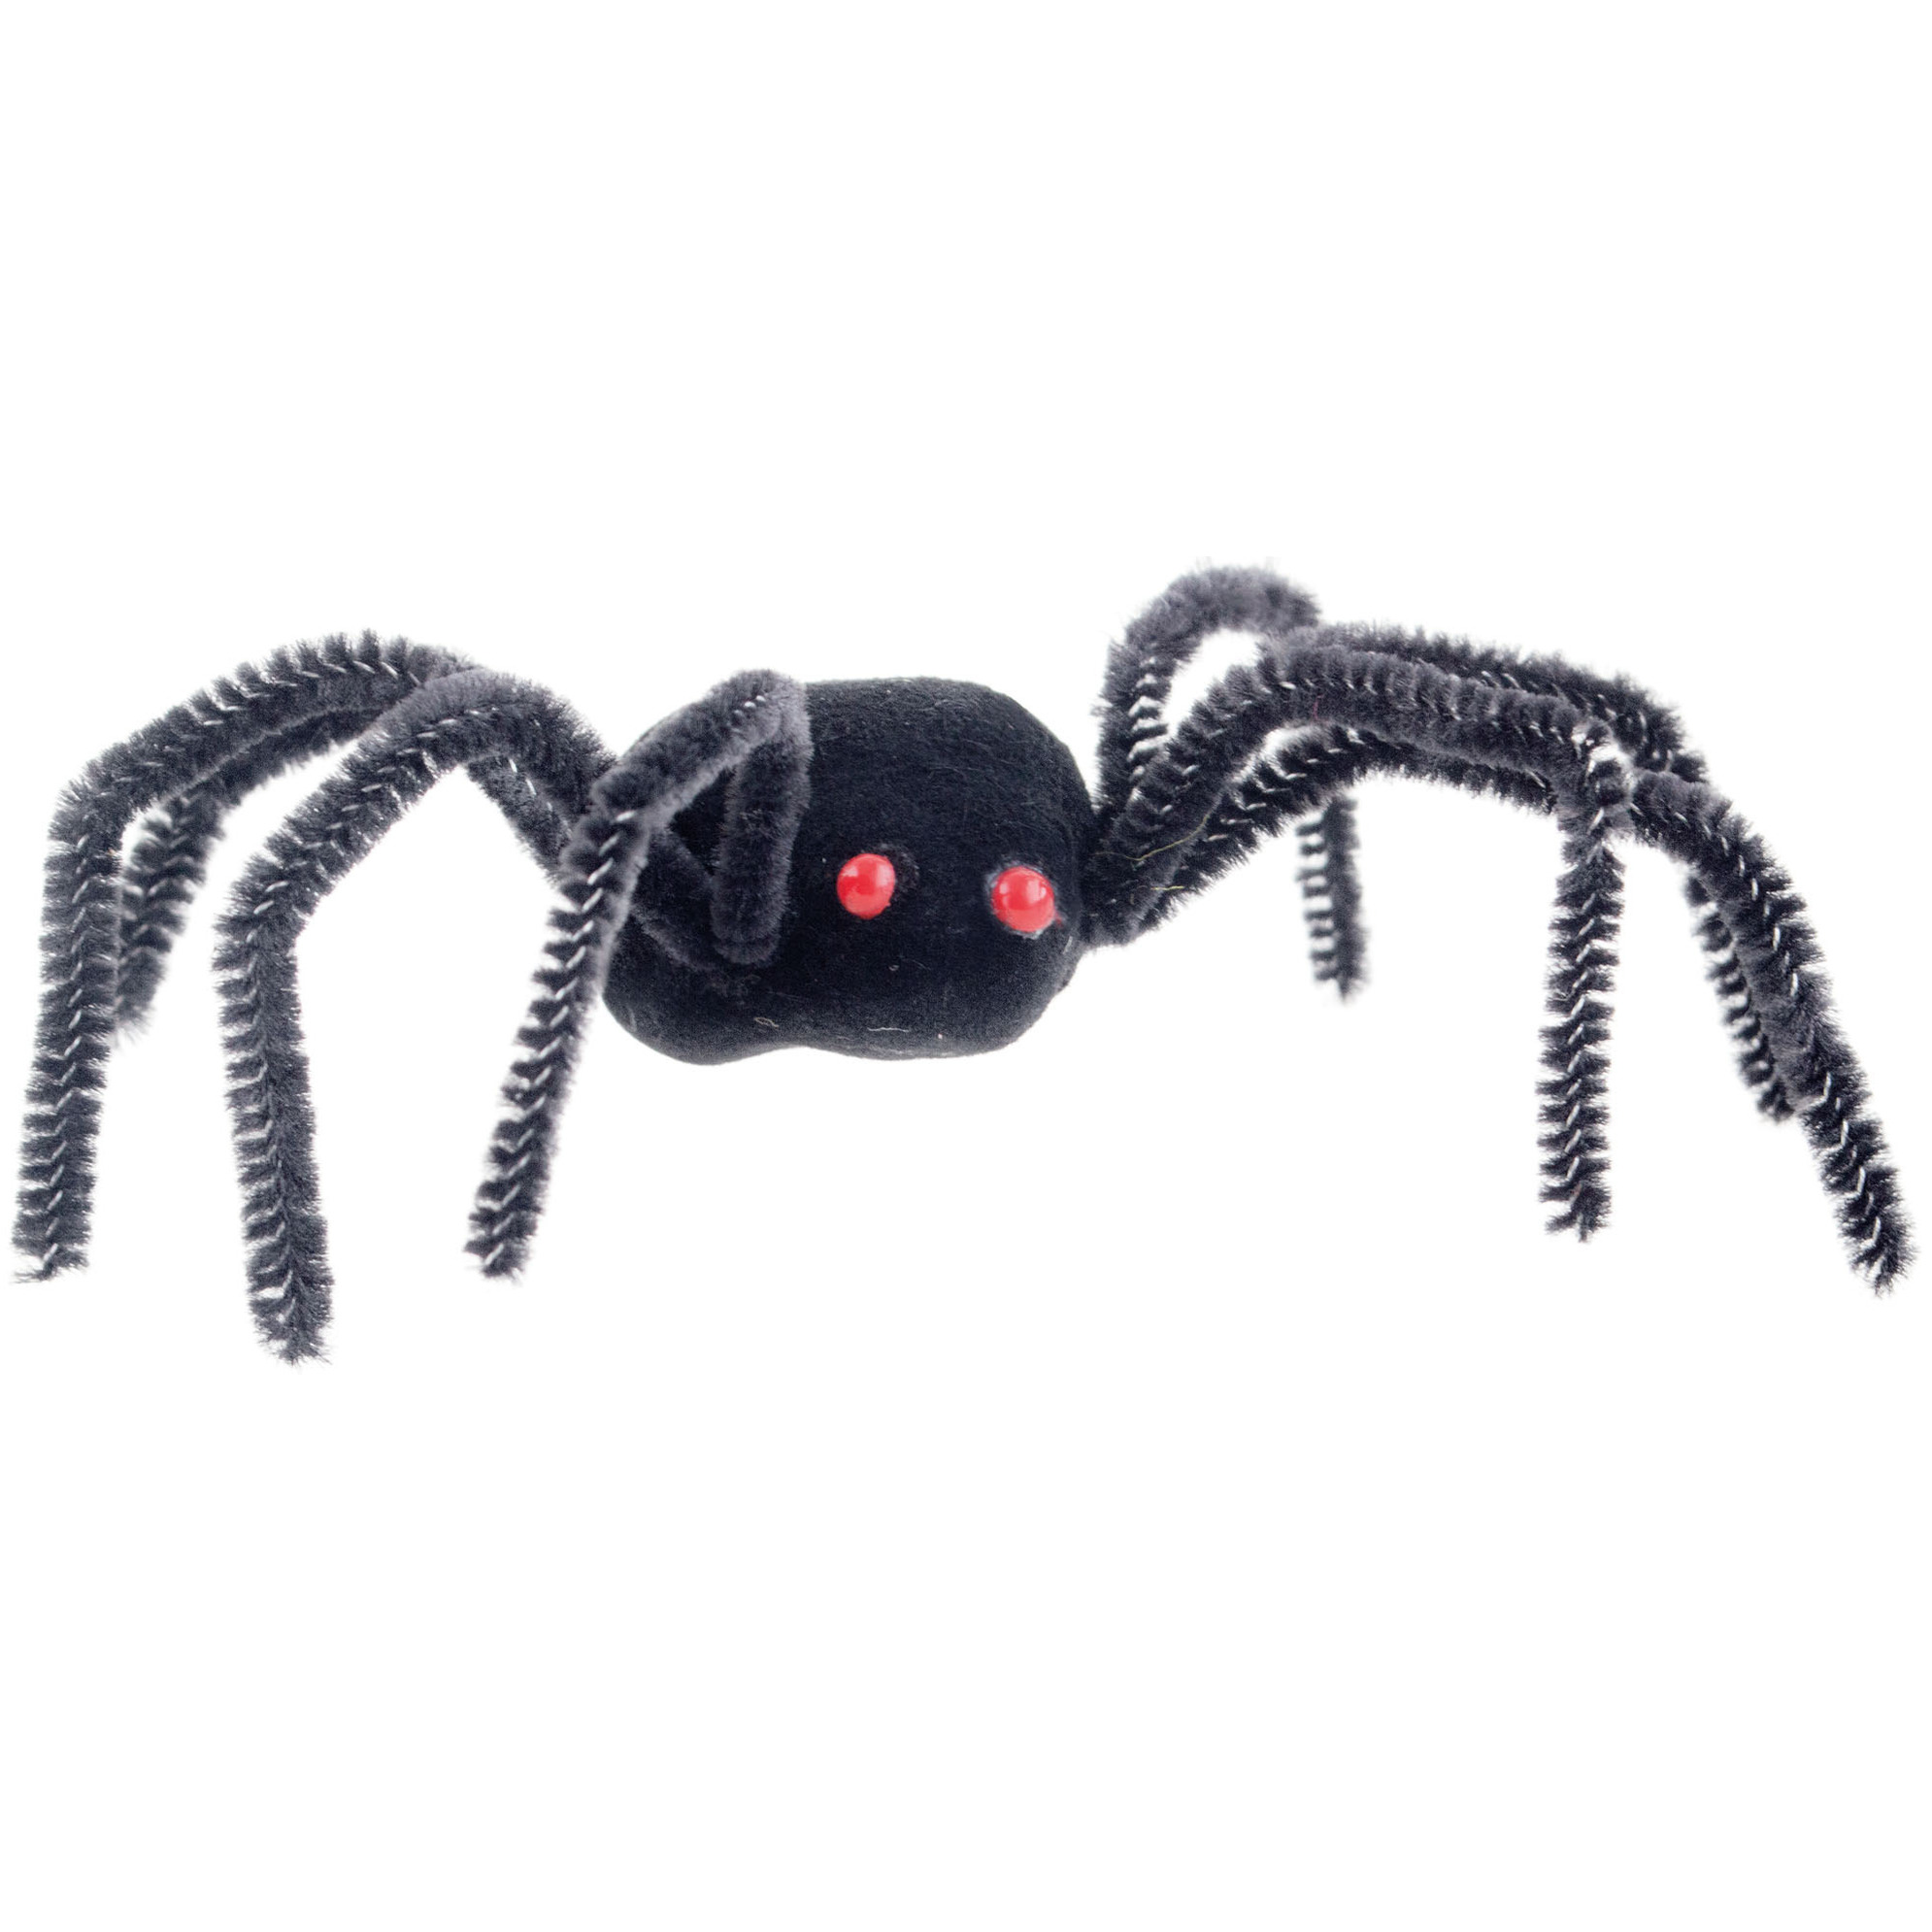 Enge Halloween nep/namaak spinnen - set 4x stuks - zwart - plastic - insecten/dieren